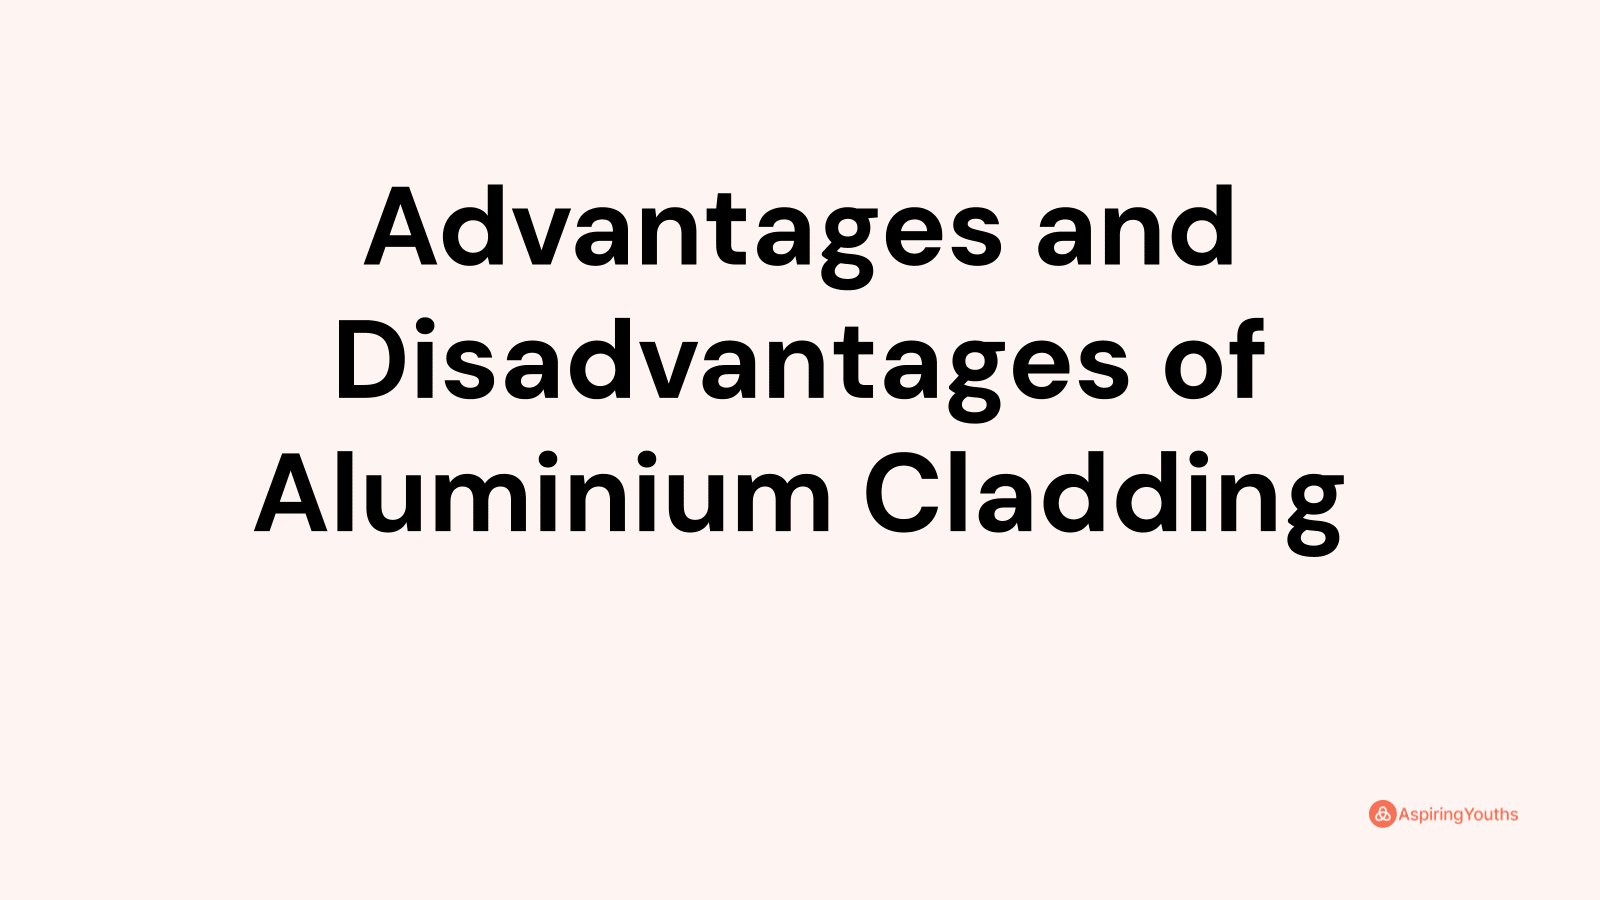 Advantages and disadvantages of Aluminium Cladding